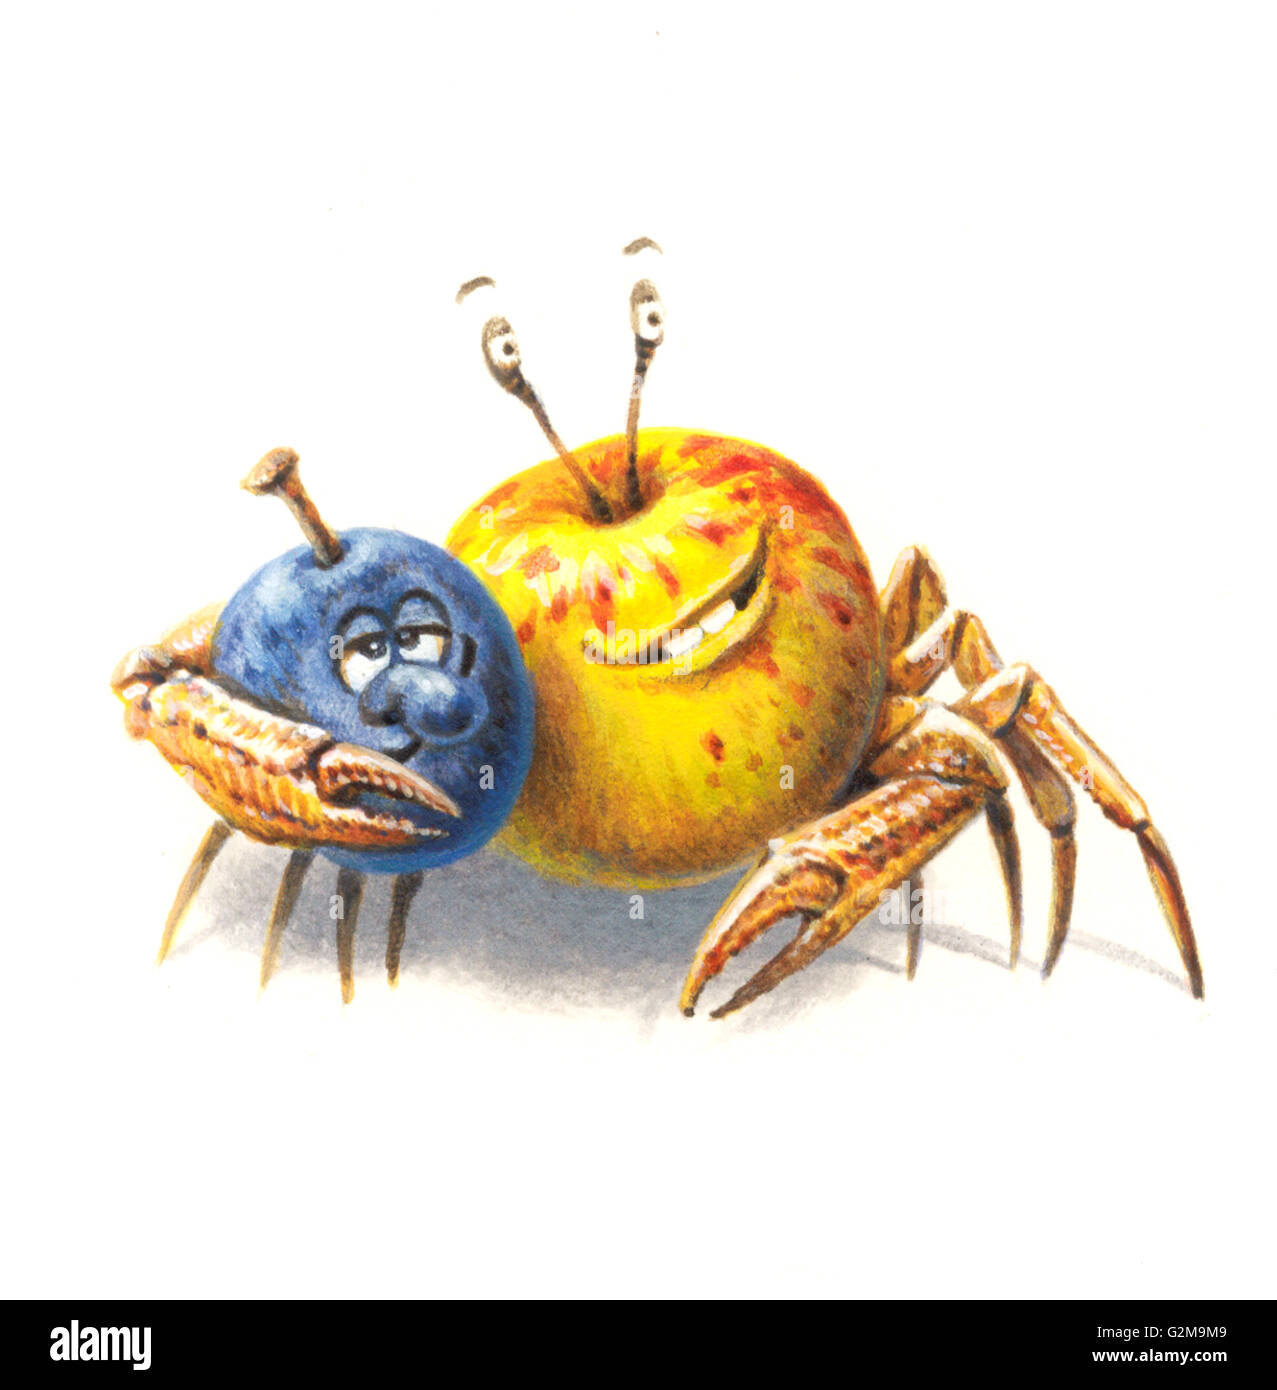 Immagine antropomorfica della mela, susina e granchio su sfondo bianco Foto Stock